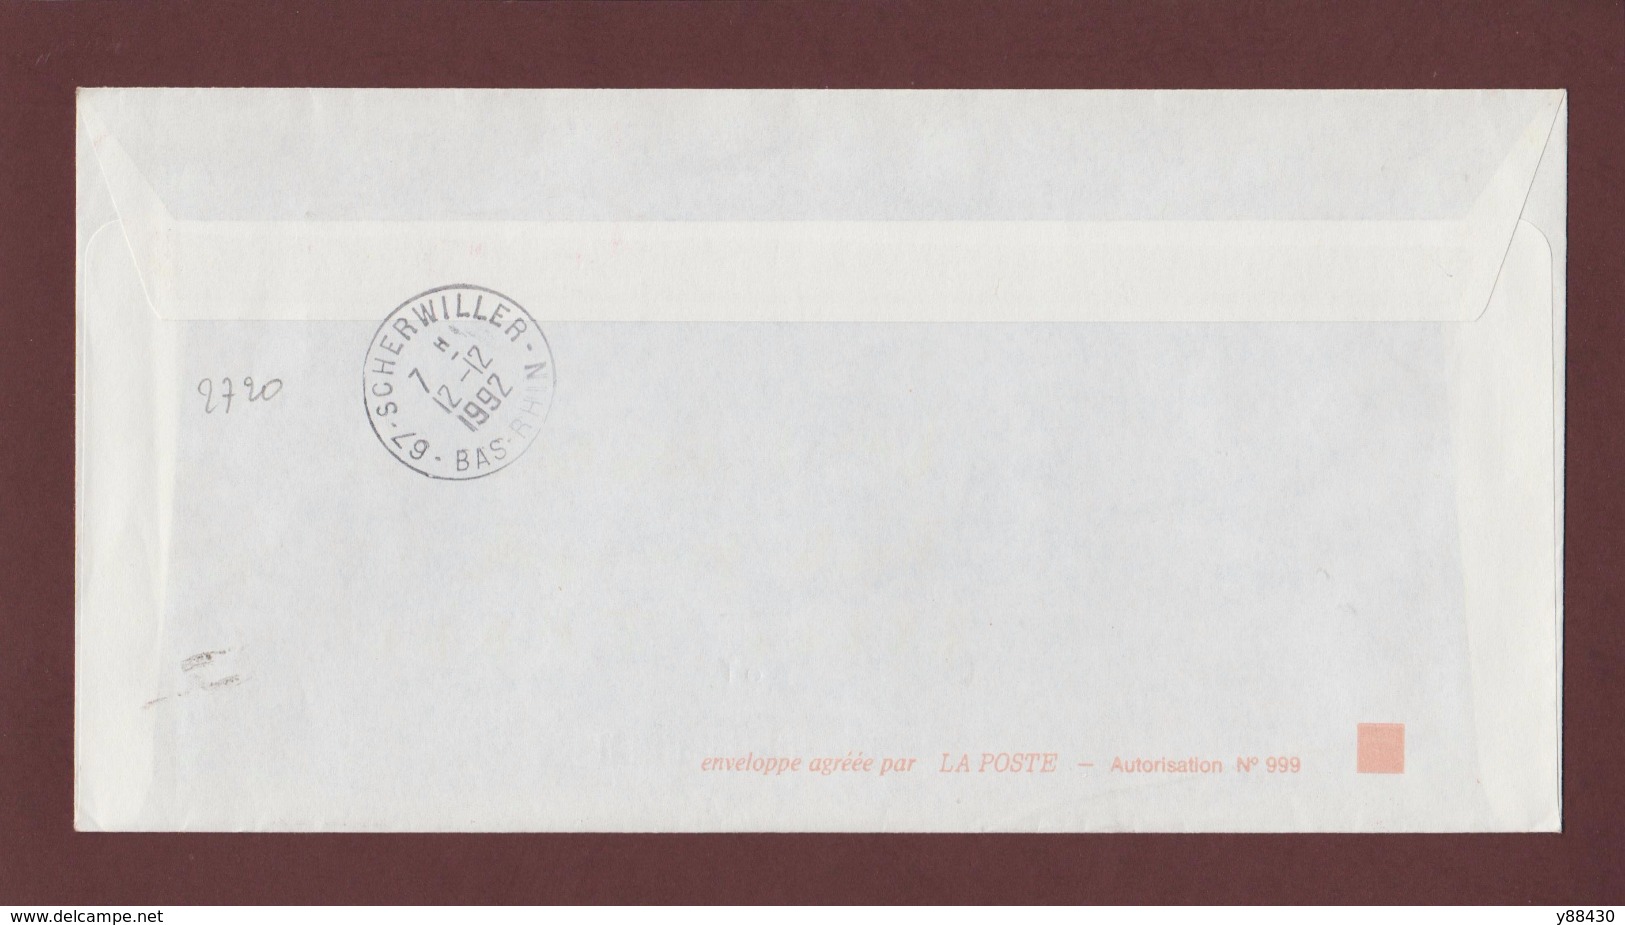 3 - 2720 De 1991 - Adresse Fantaisiste - M. OCTOBRE à SCHERWILLER. 67 - Retour Cachet De Scherwiller - Voir 2 Scannes - Used Stamps